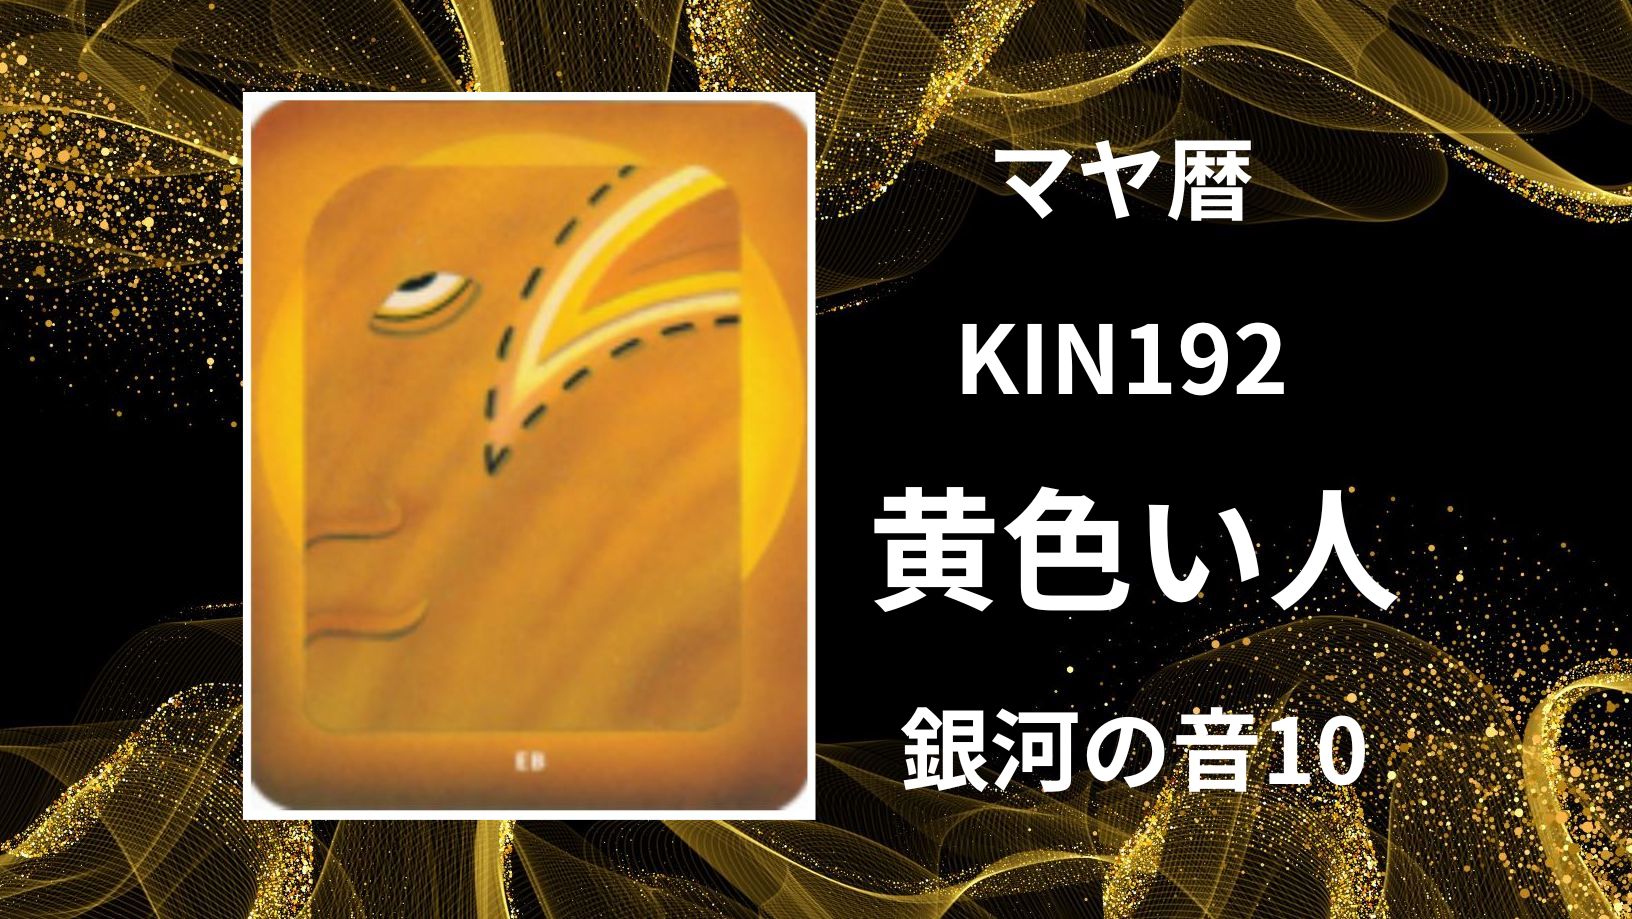 【マヤ暦-今日はどんな日】KIN192「黄色い人」のメッセージ